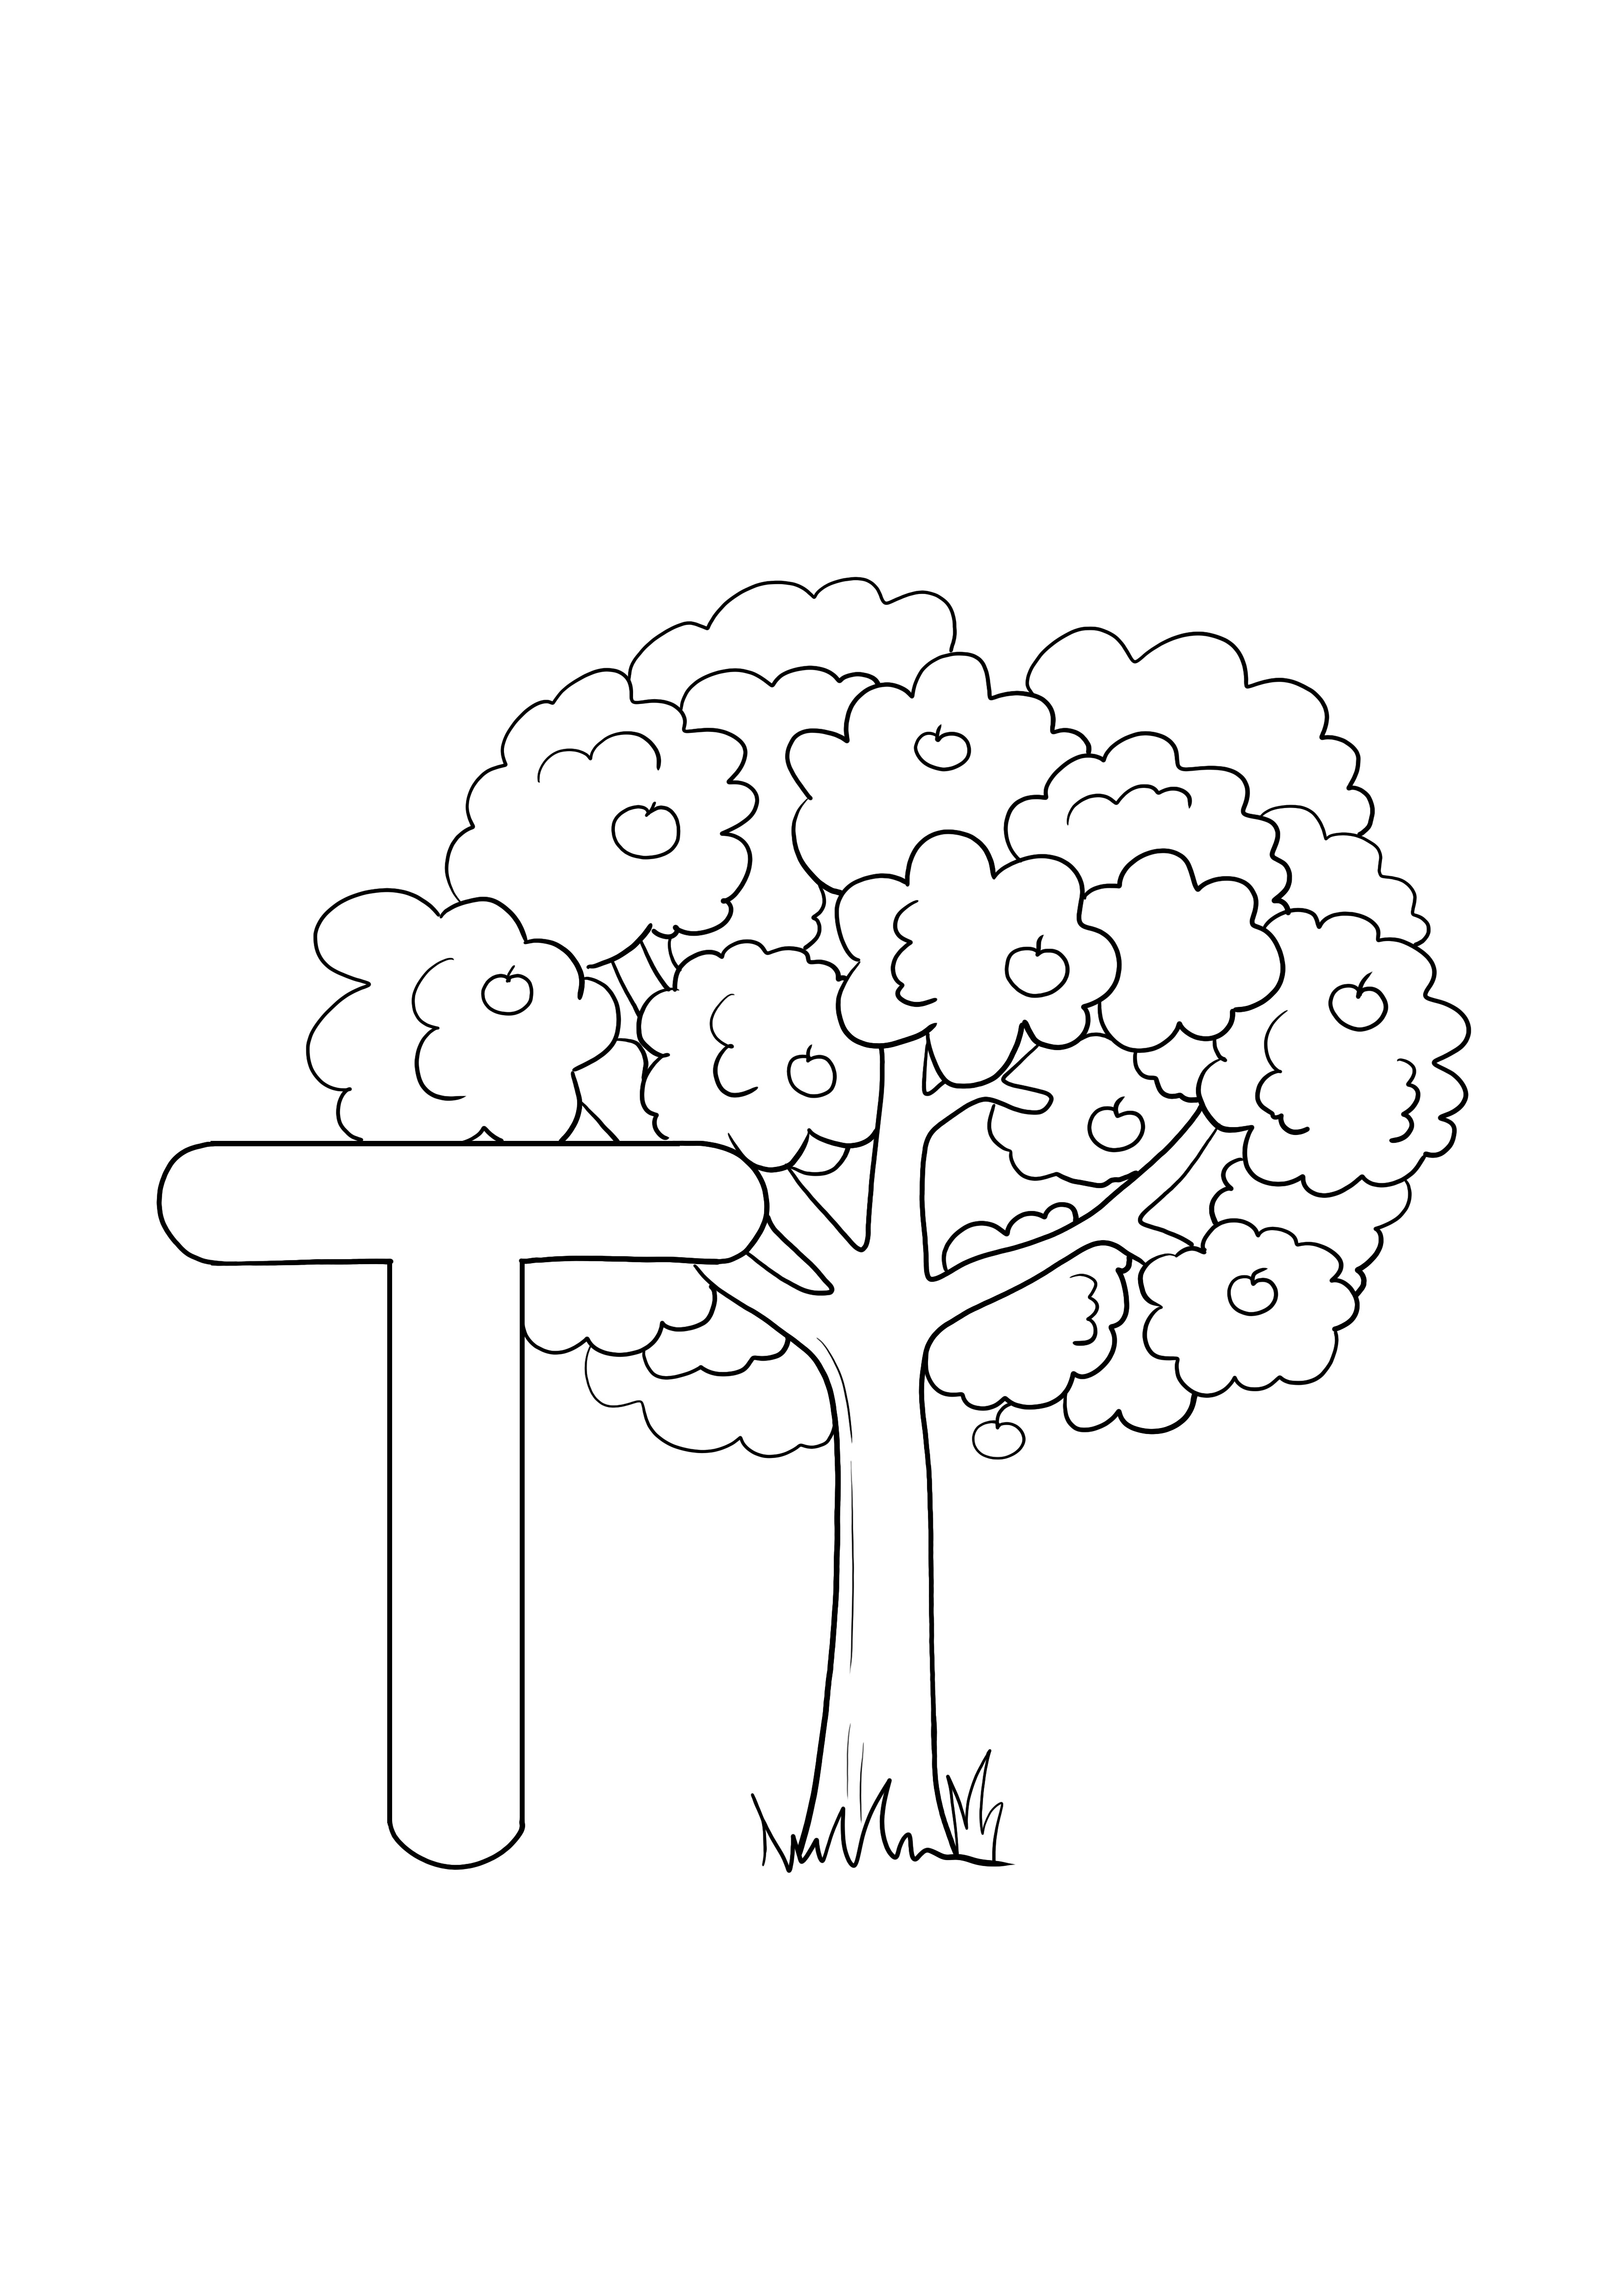 T, ağacın ücretsiz olarak renklendirilmesi ve yazdırılması içindir